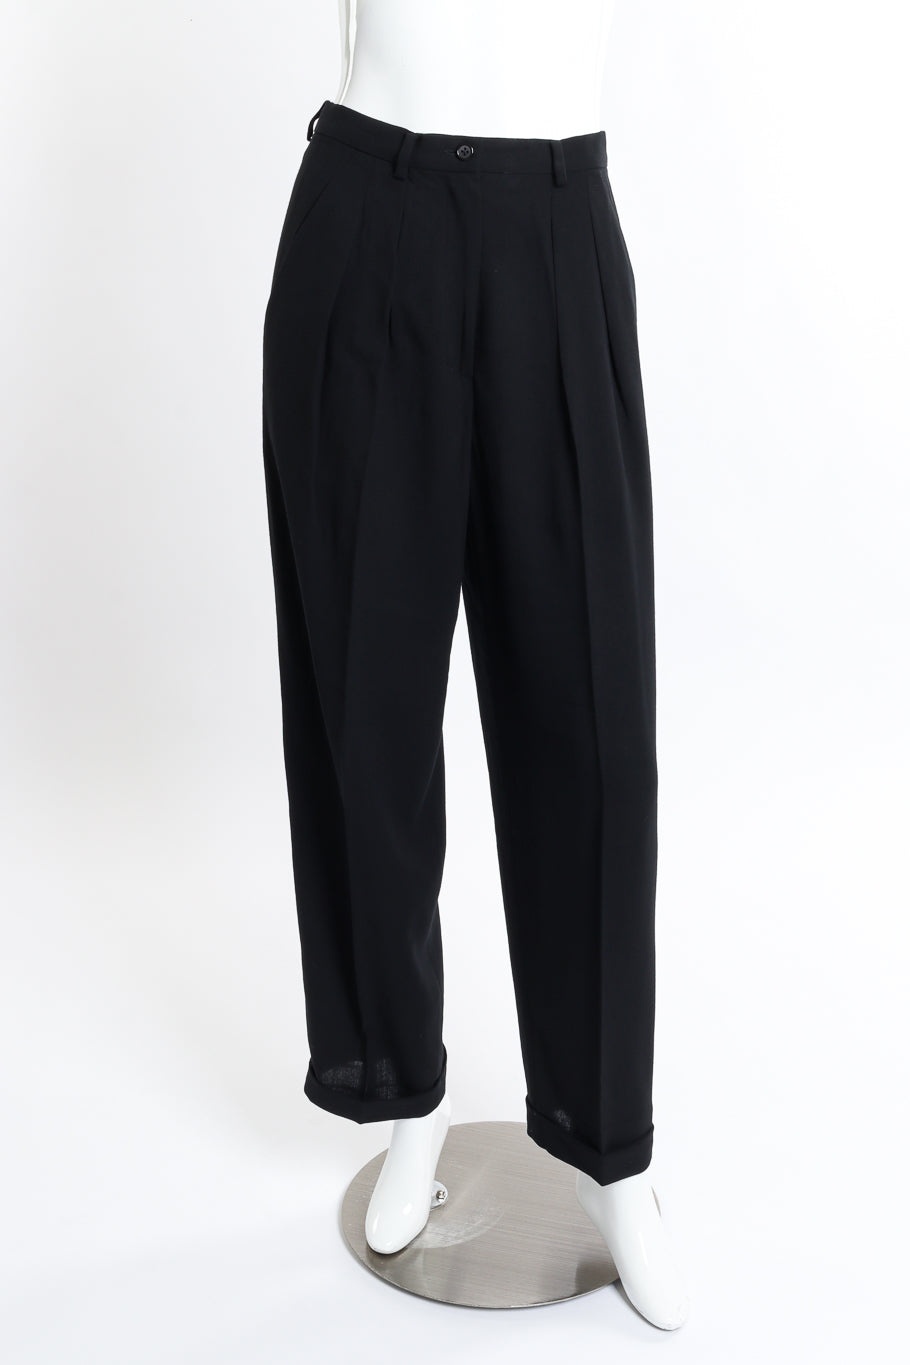 Vintage DKNY Longline Blazer and Pant Suit Set pant front on mannequin @recess la